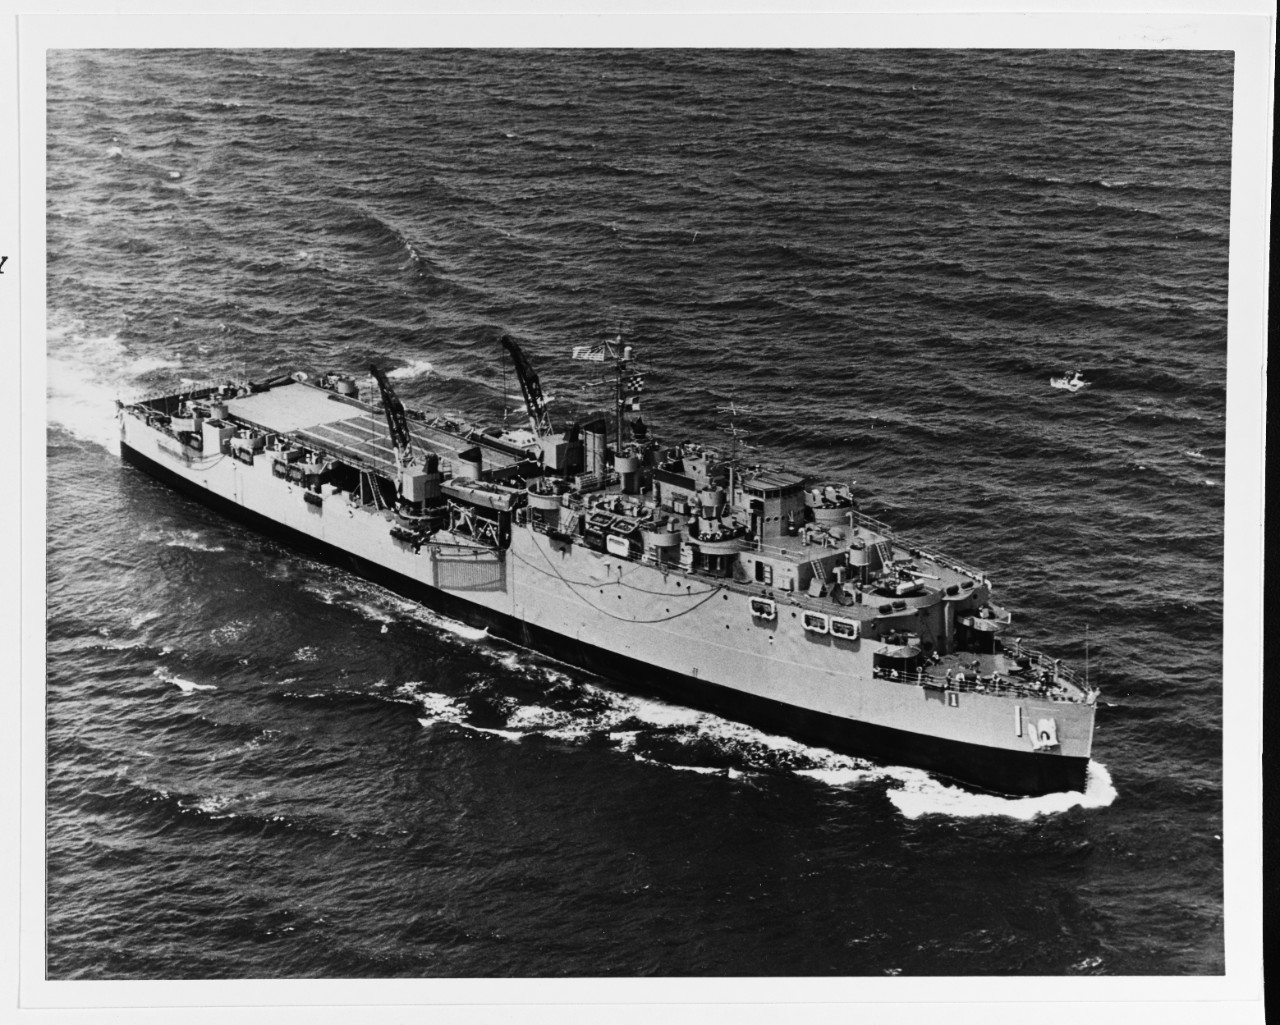 USS ASHLAND (LSD-1)